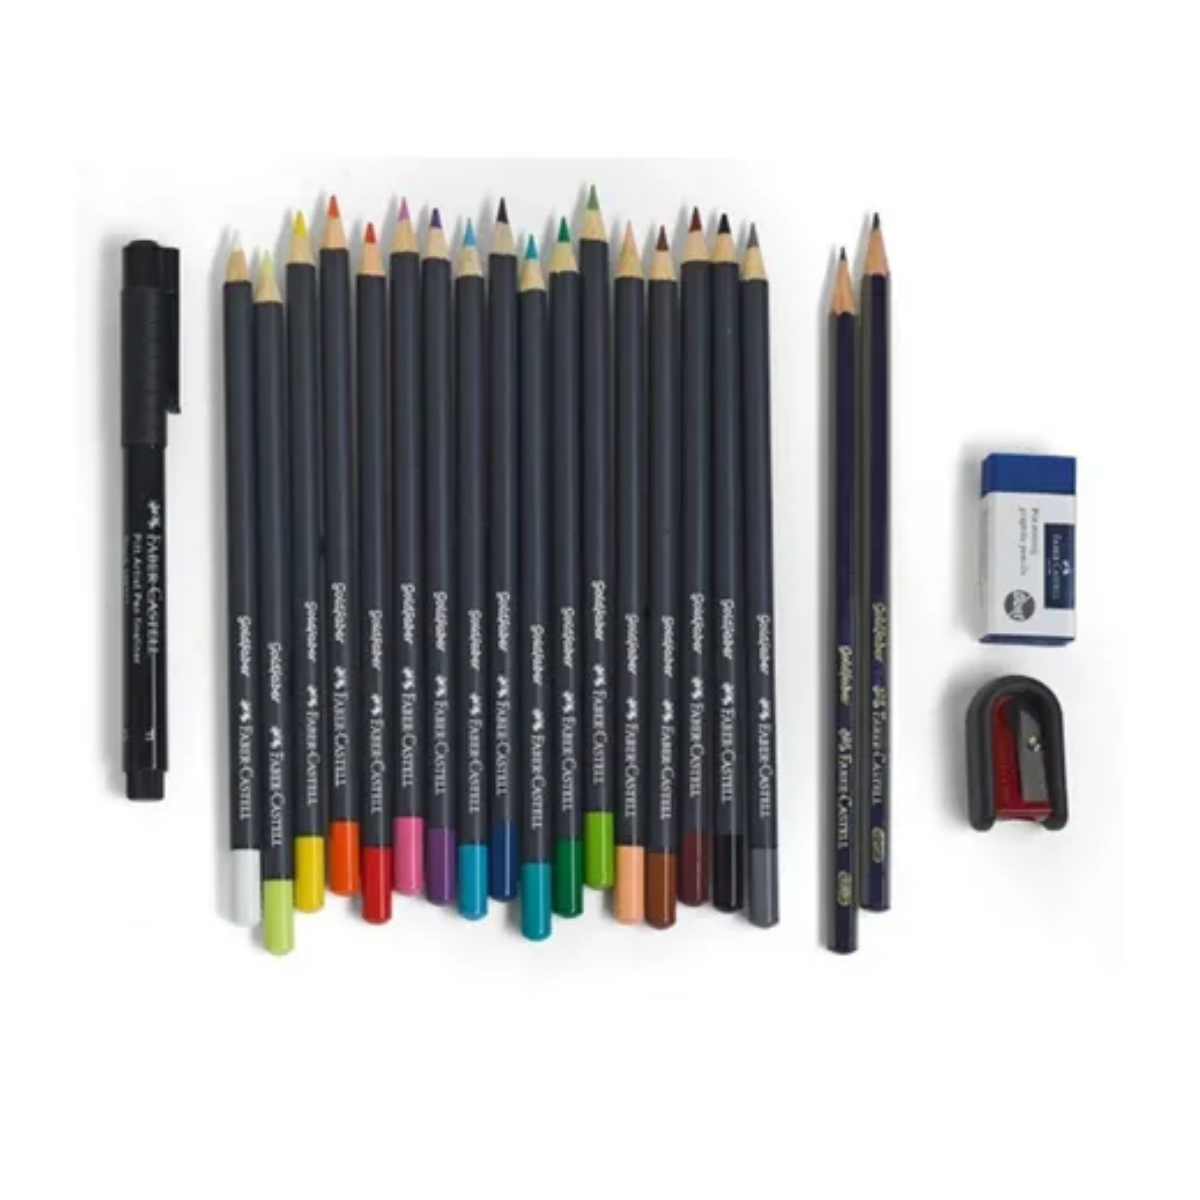  Faber Castell, lápices de colores calidad premium, 48 colores :  Arte y Manualidades